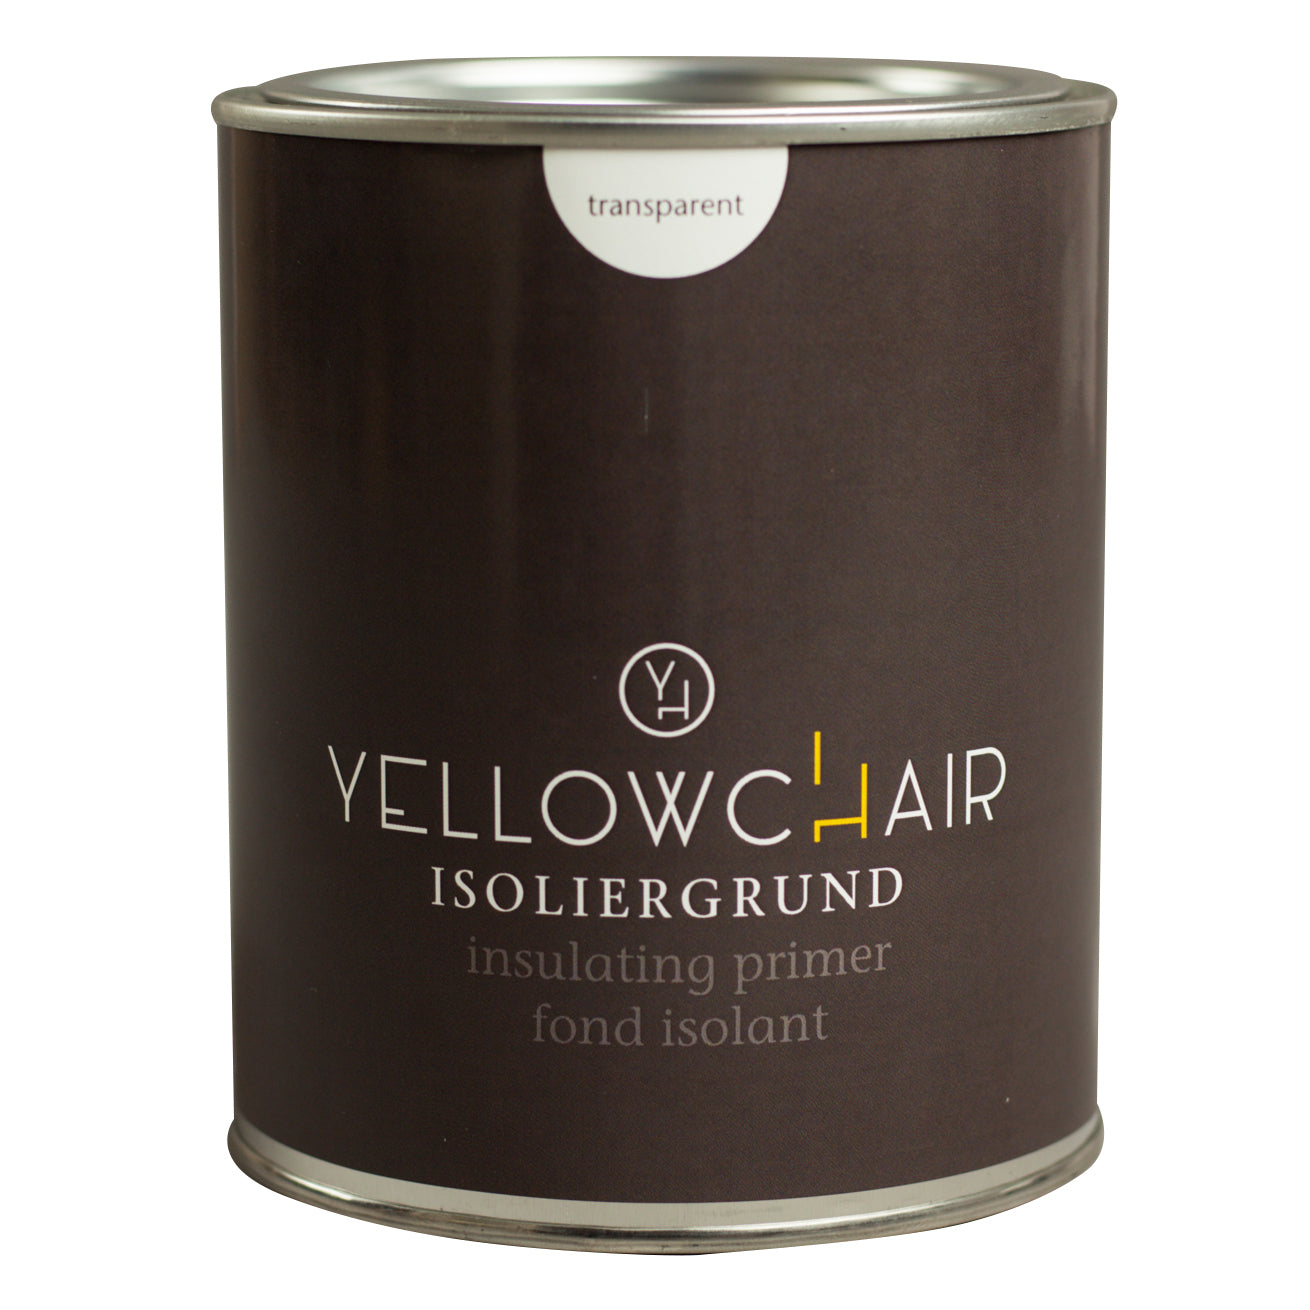 yellowchair insulating primer 750 ml